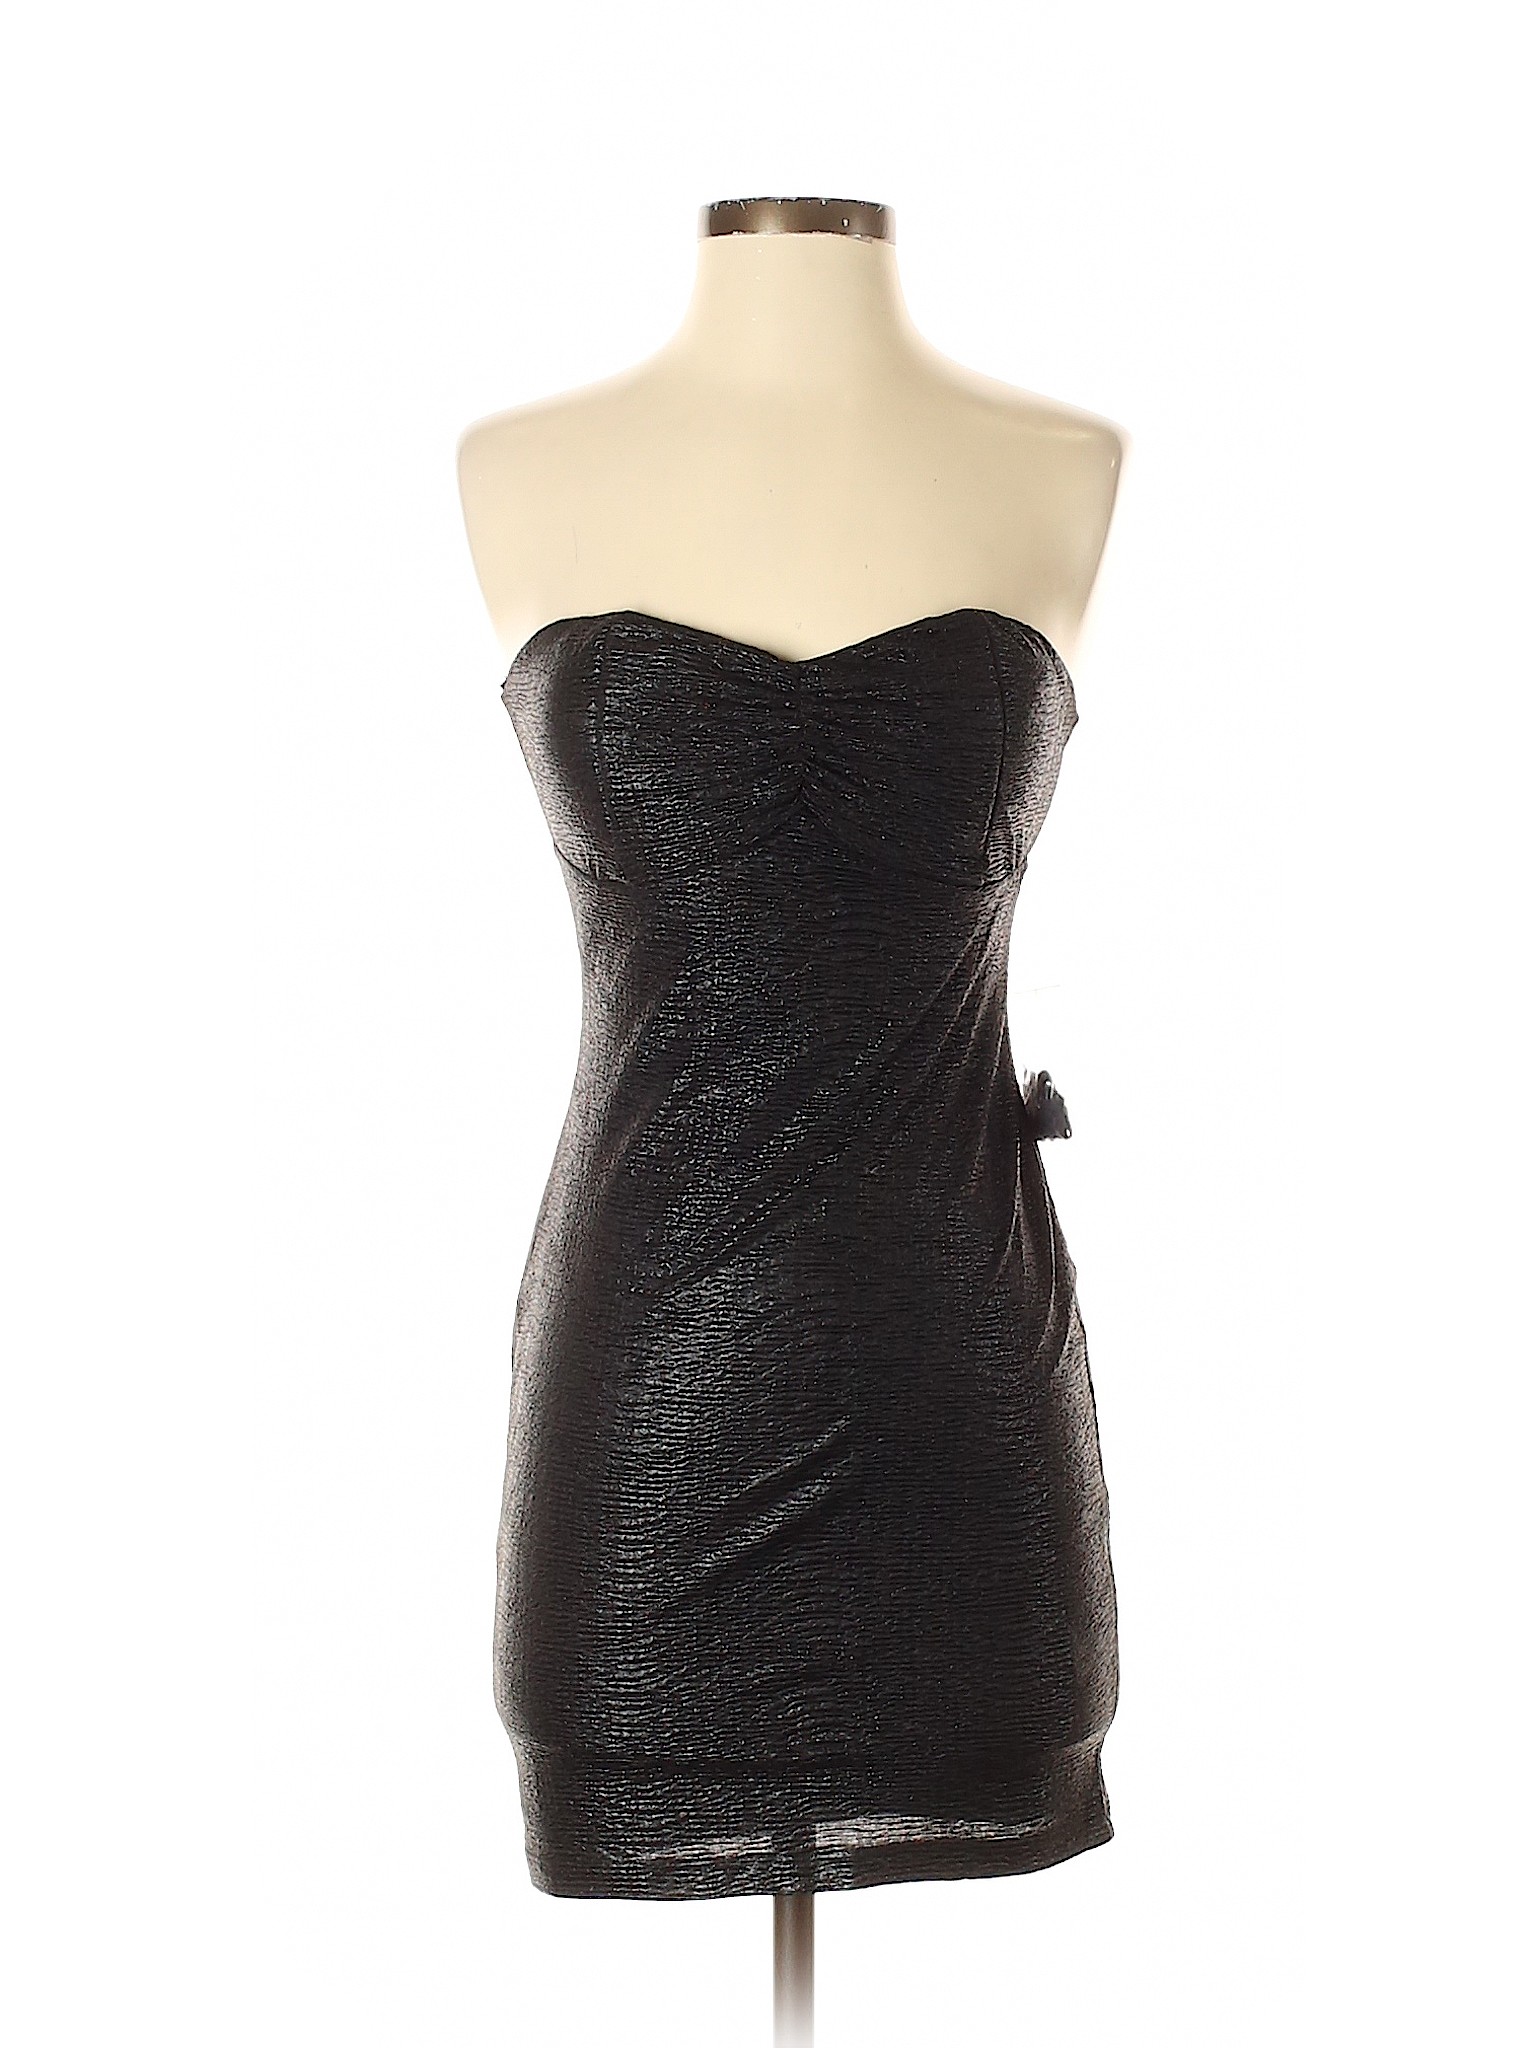 Forever 21 Women Black Cocktail Dress M | eBay